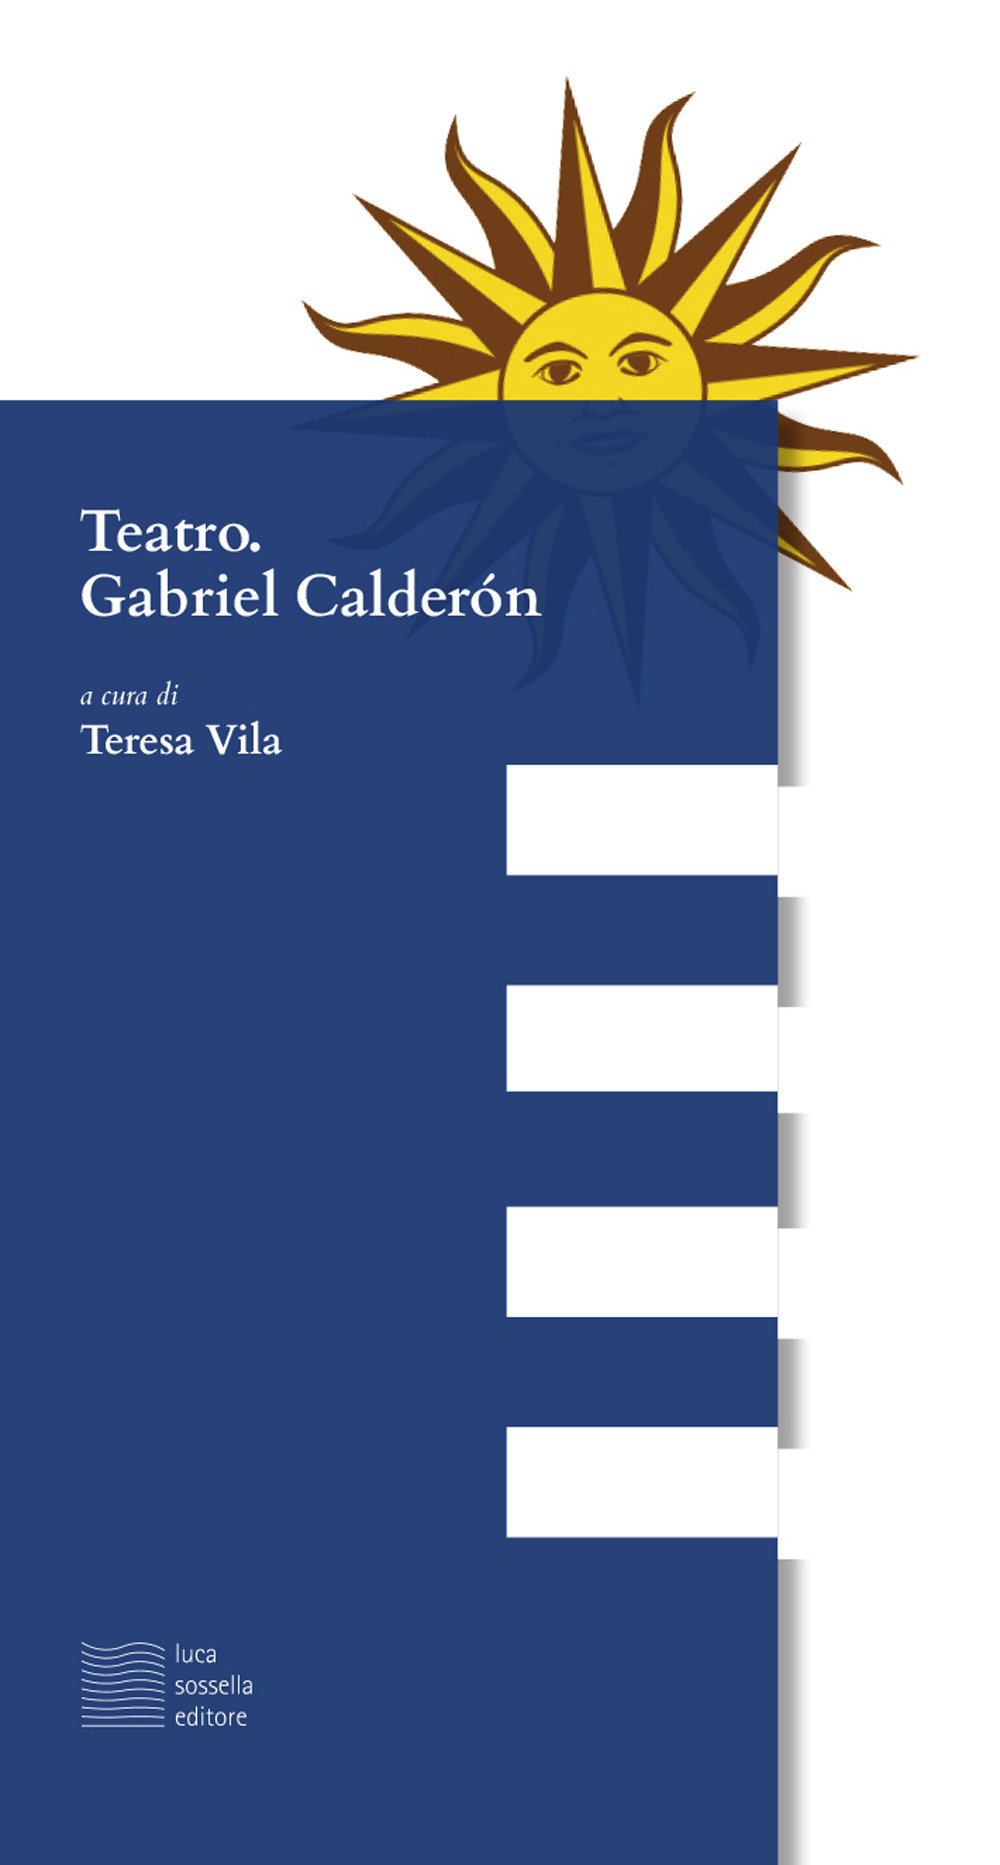 Teatro. Gabriel Calderón